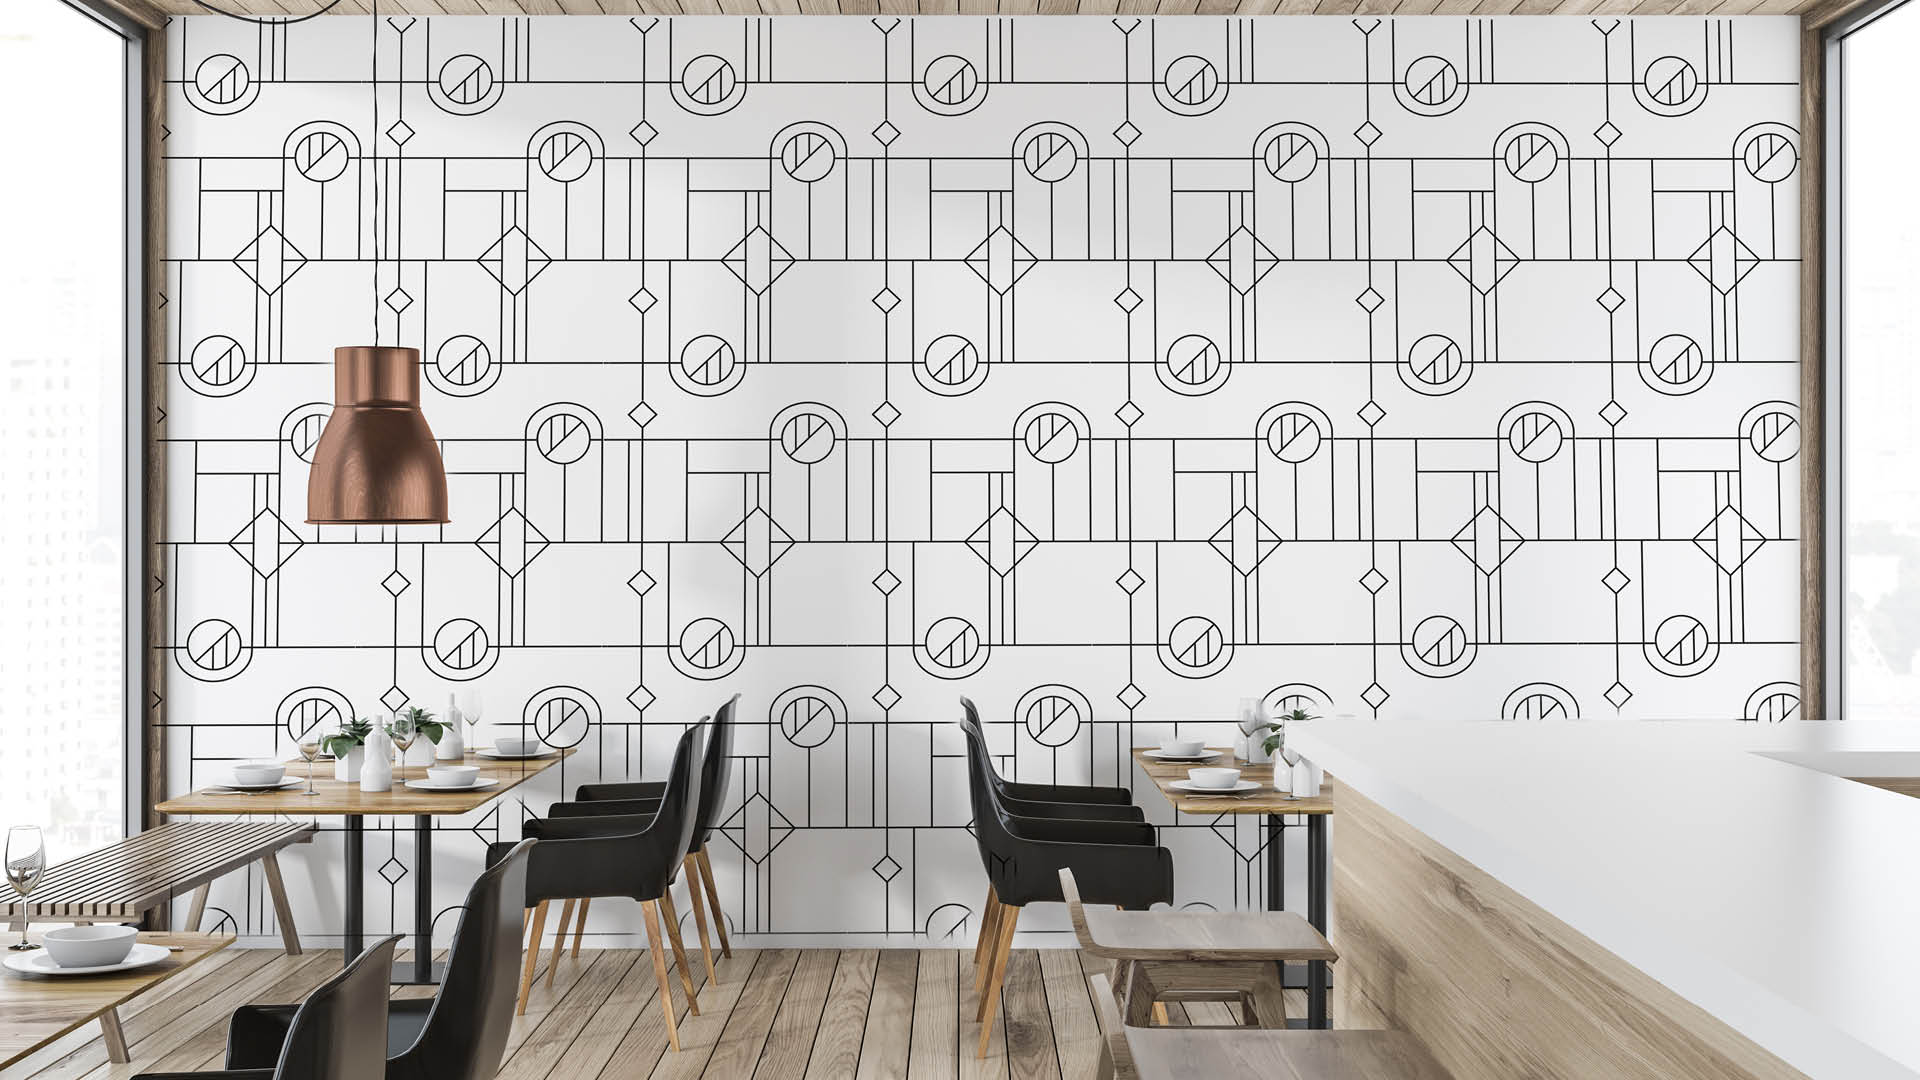 Grafisch ontwerp van visuele identiteit (logo, huisstijl en patronen) voor Boutique Hotel Beekhuizen door grafisch ontwerpbureau studio ddo in Amersfoort